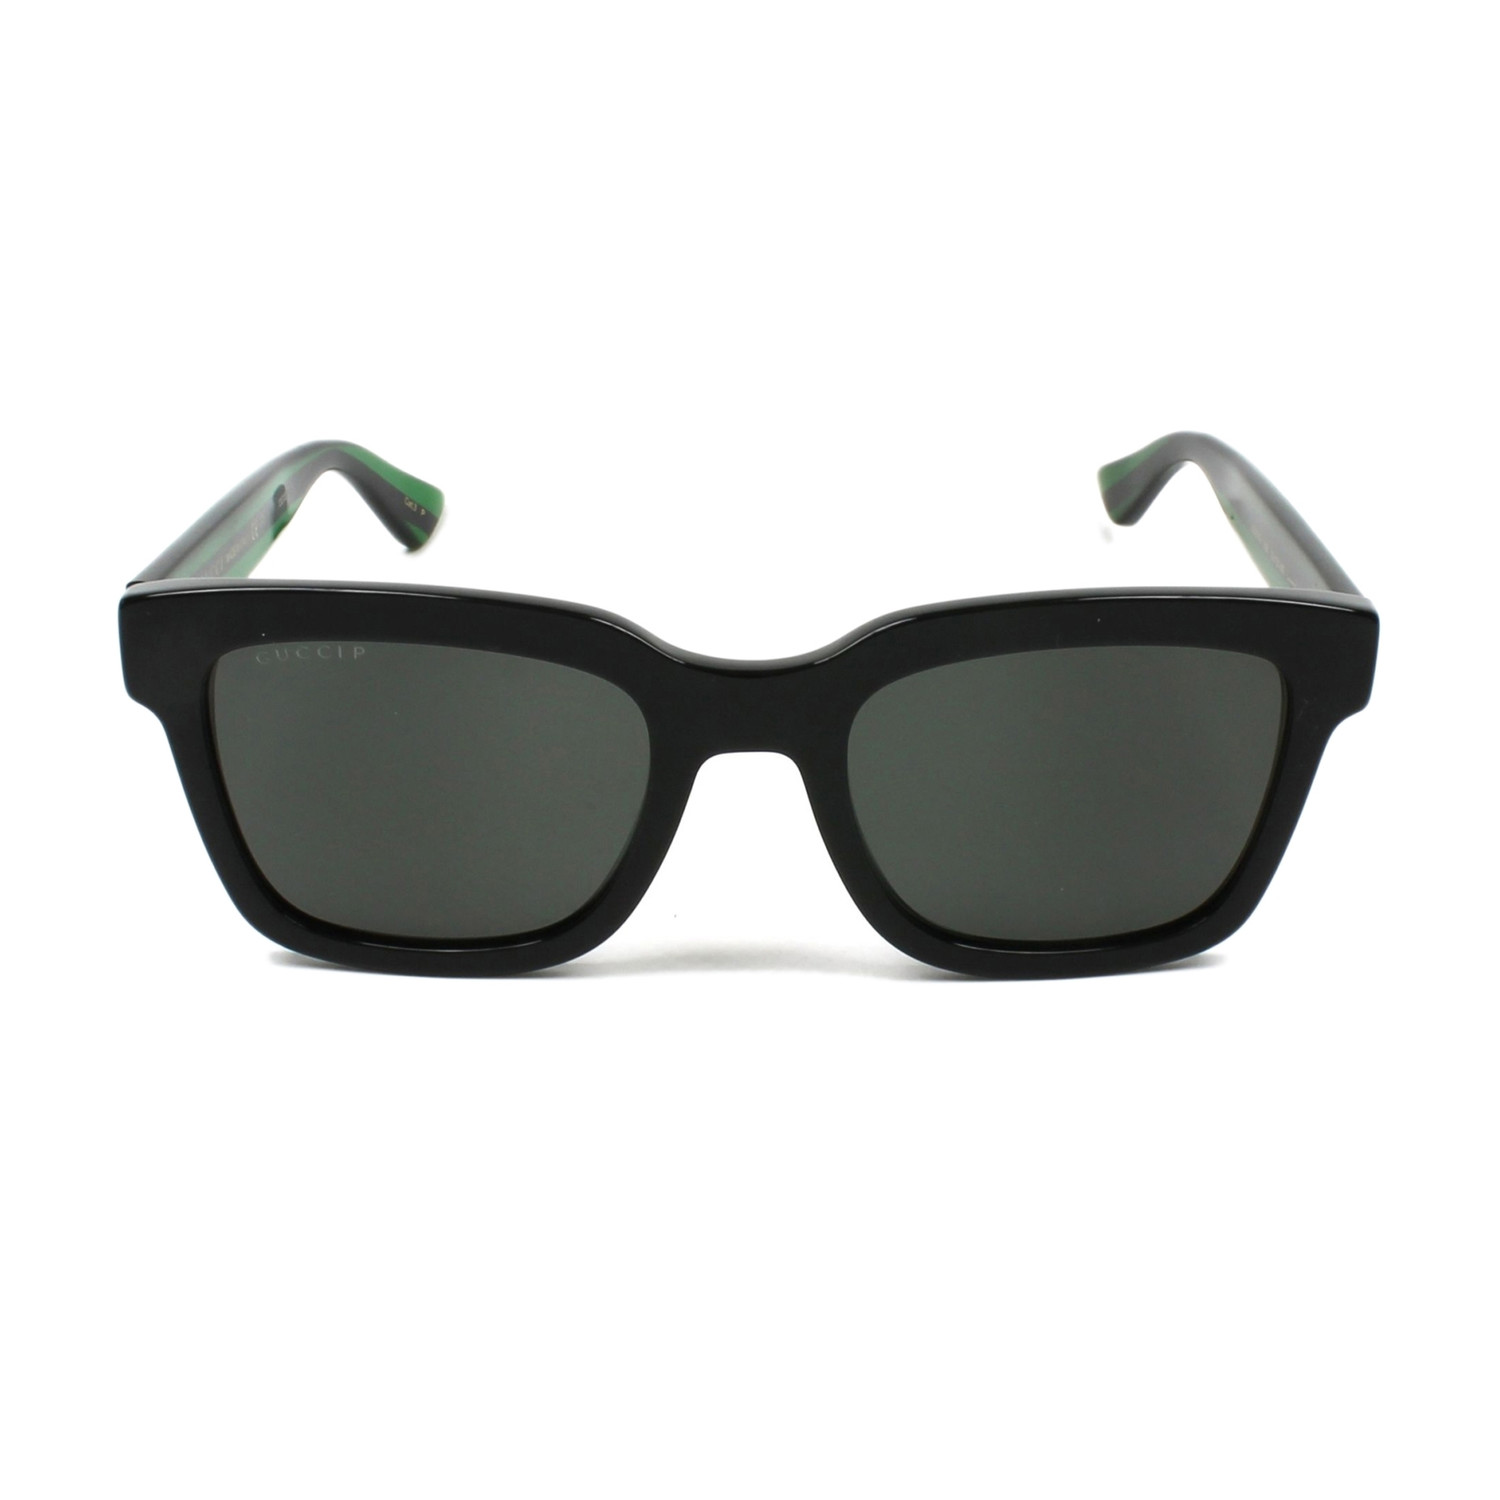 Men's GG0001S-006-52 Polarized Sunglasses // Black + Gray - Gucci ...